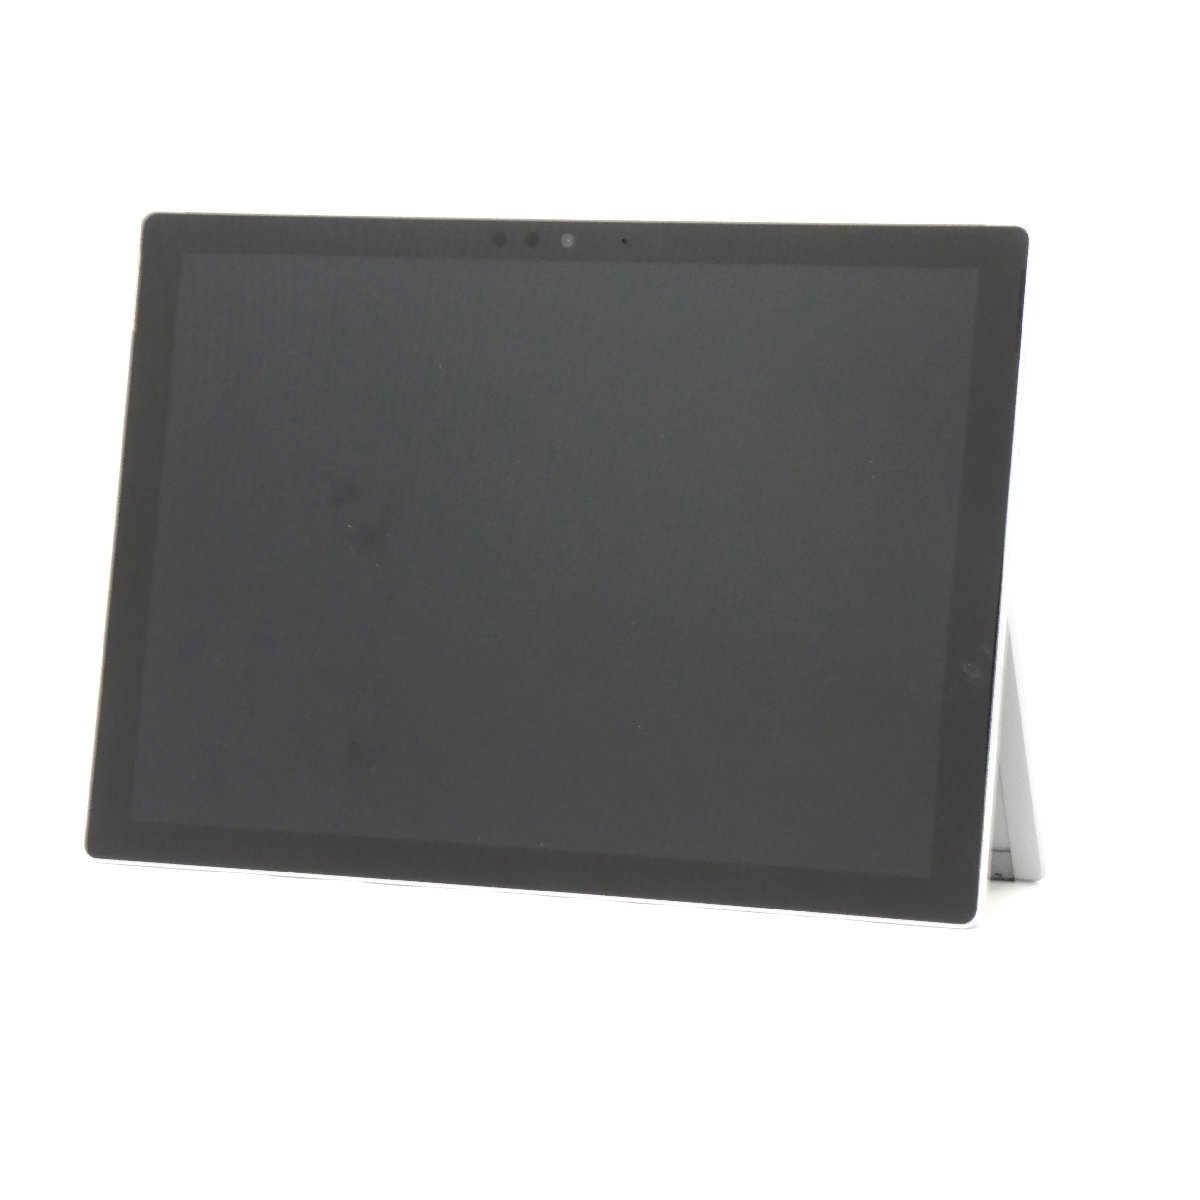 【ジャンク】マイクロソフト Surface Pro5 1796 Core i5 7300U 2.6GHz/8GB/SSD128GB/12インチ/OS無/AC無【栃木出荷】_Surface Pro5 1796